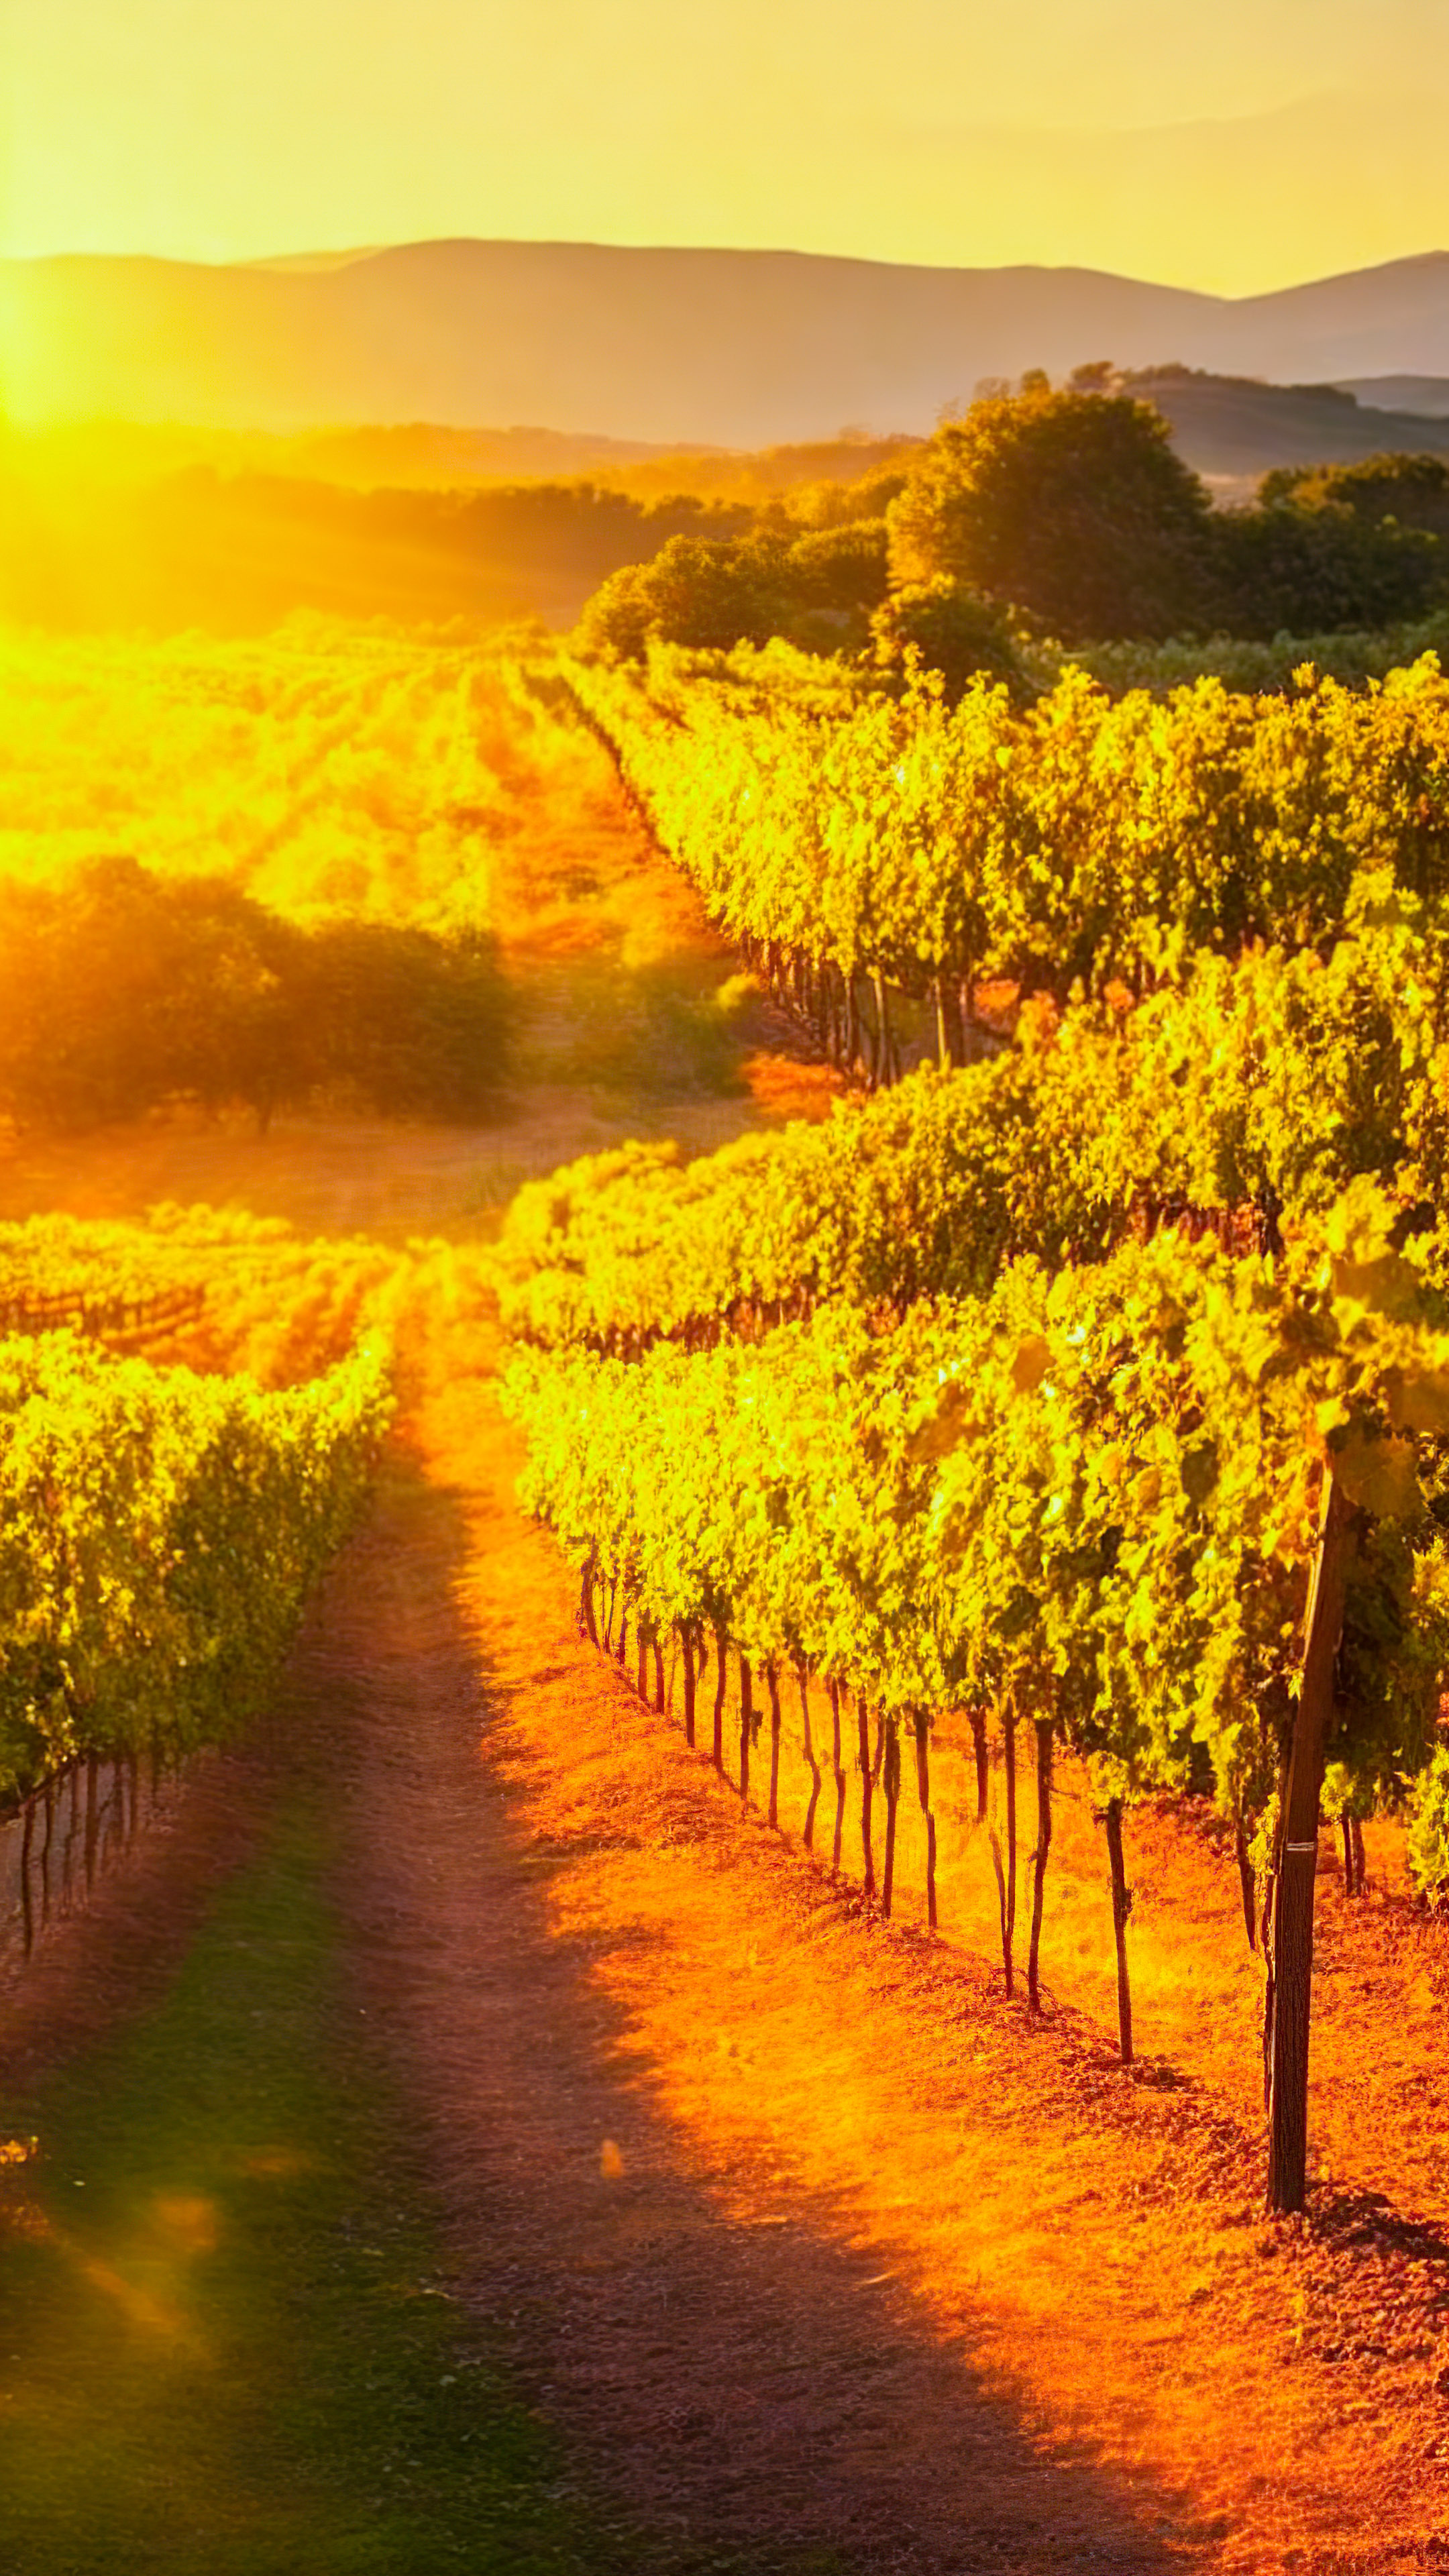 Téléchargez la sérénité du vignoble avec notre fond d'écran de paysage au coucher du soleil pour mobile, capturant un vignoble pittoresque baigné de lumière dorée, avec des rangées de vignes qui s'étendent à l'horizon.